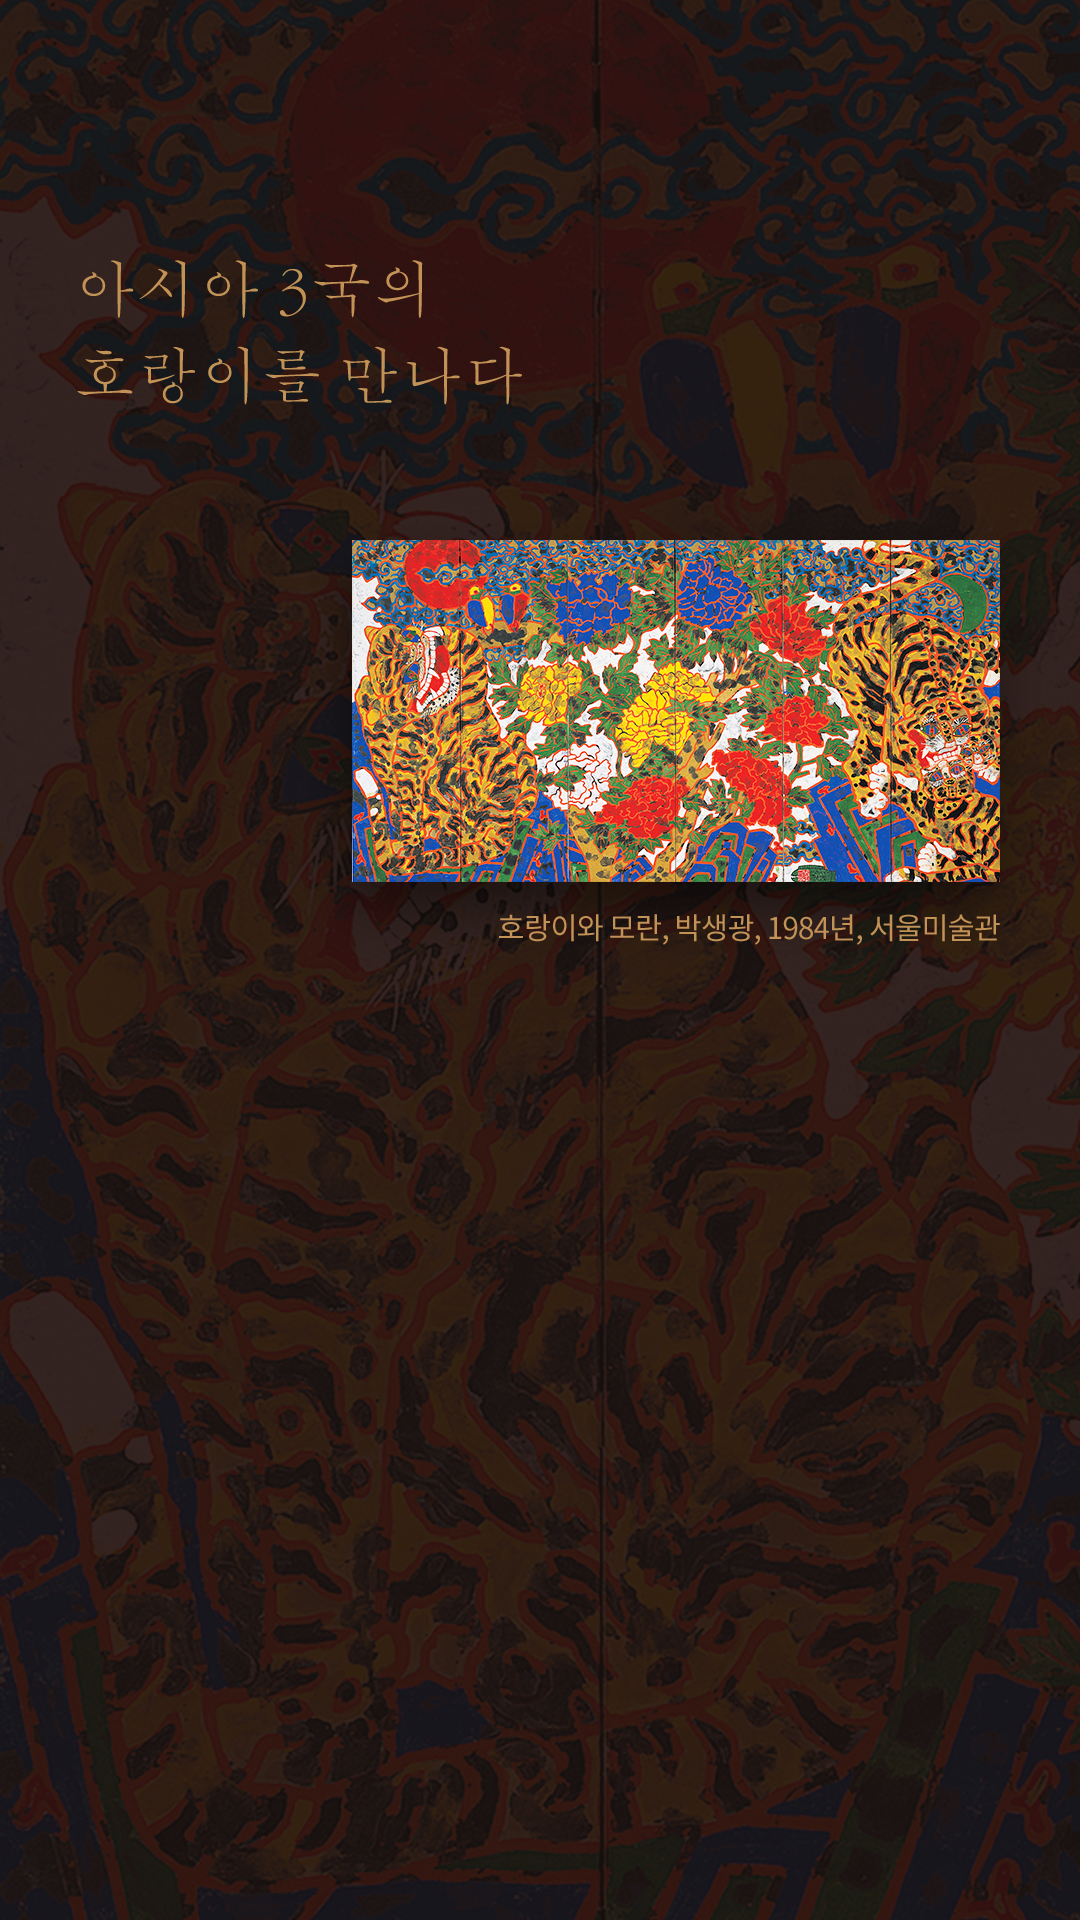 호랑이와 모란, 박생광, 1984년, 서울미술관